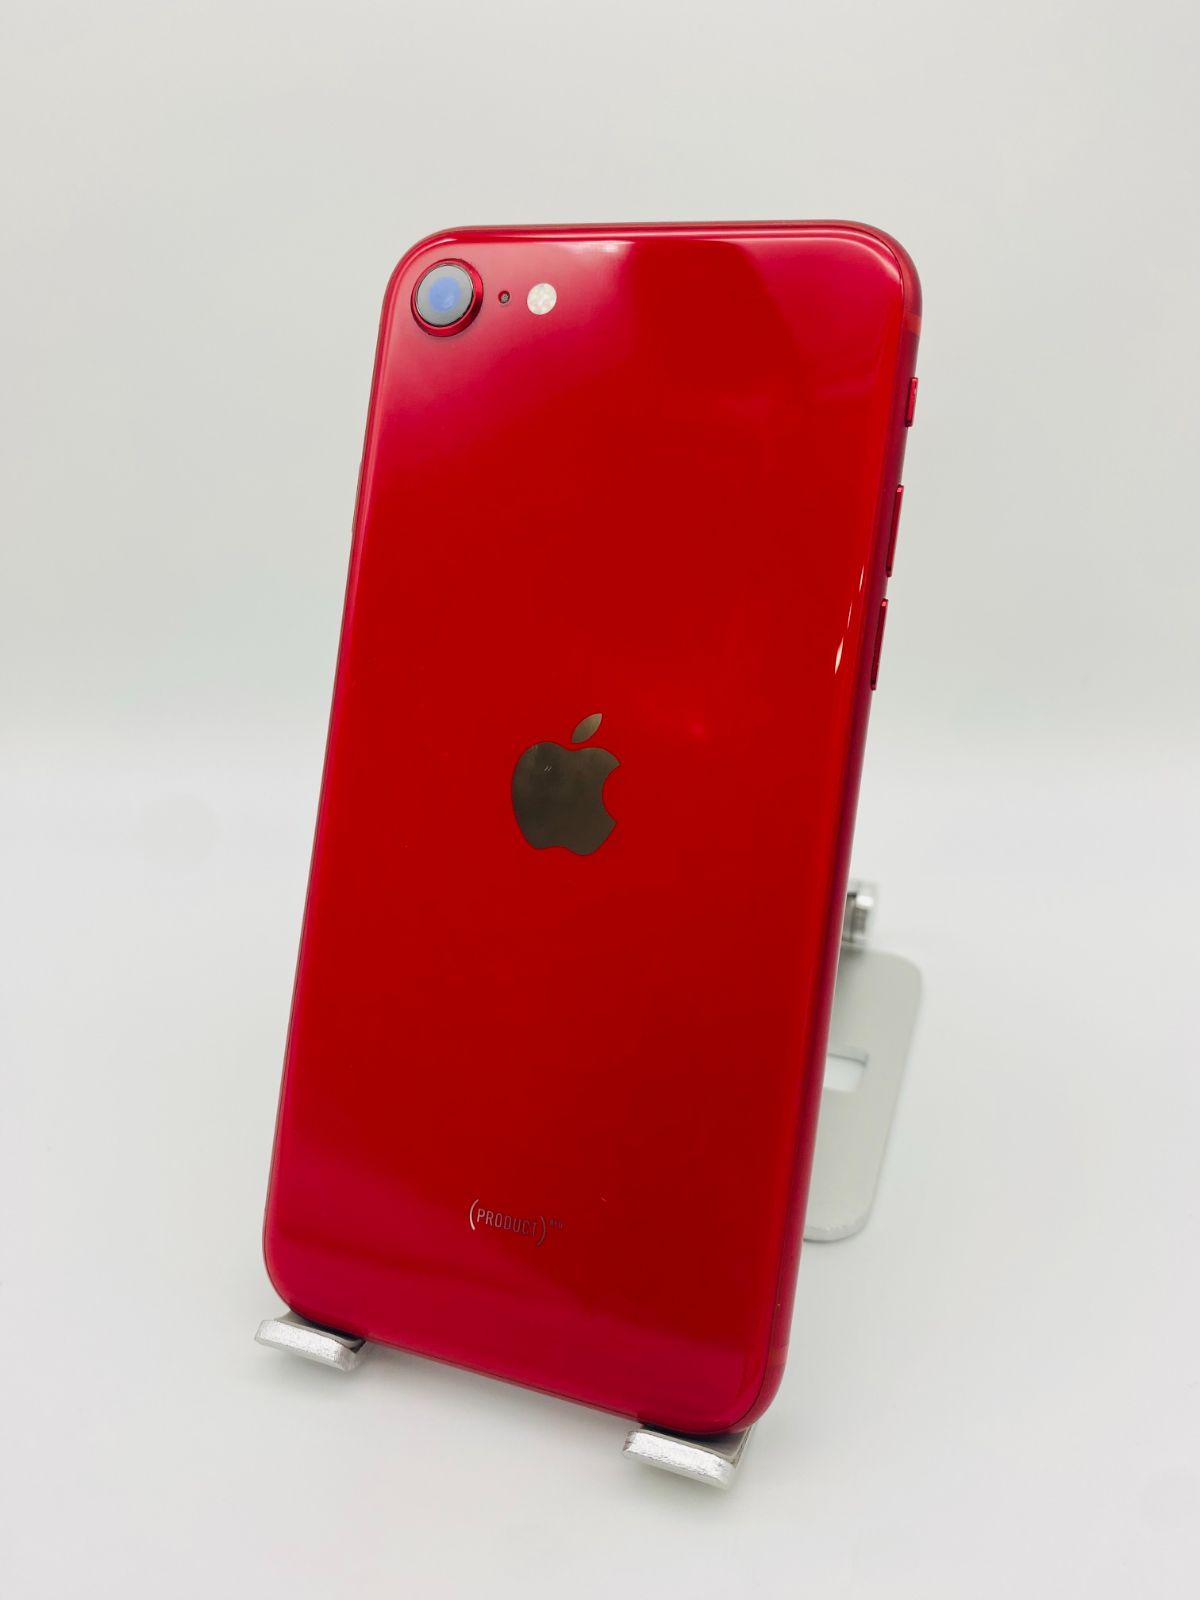 iPhone SE 第2世代 256GB レッド/シムフリー/新品バッテリー100%/新品 ...